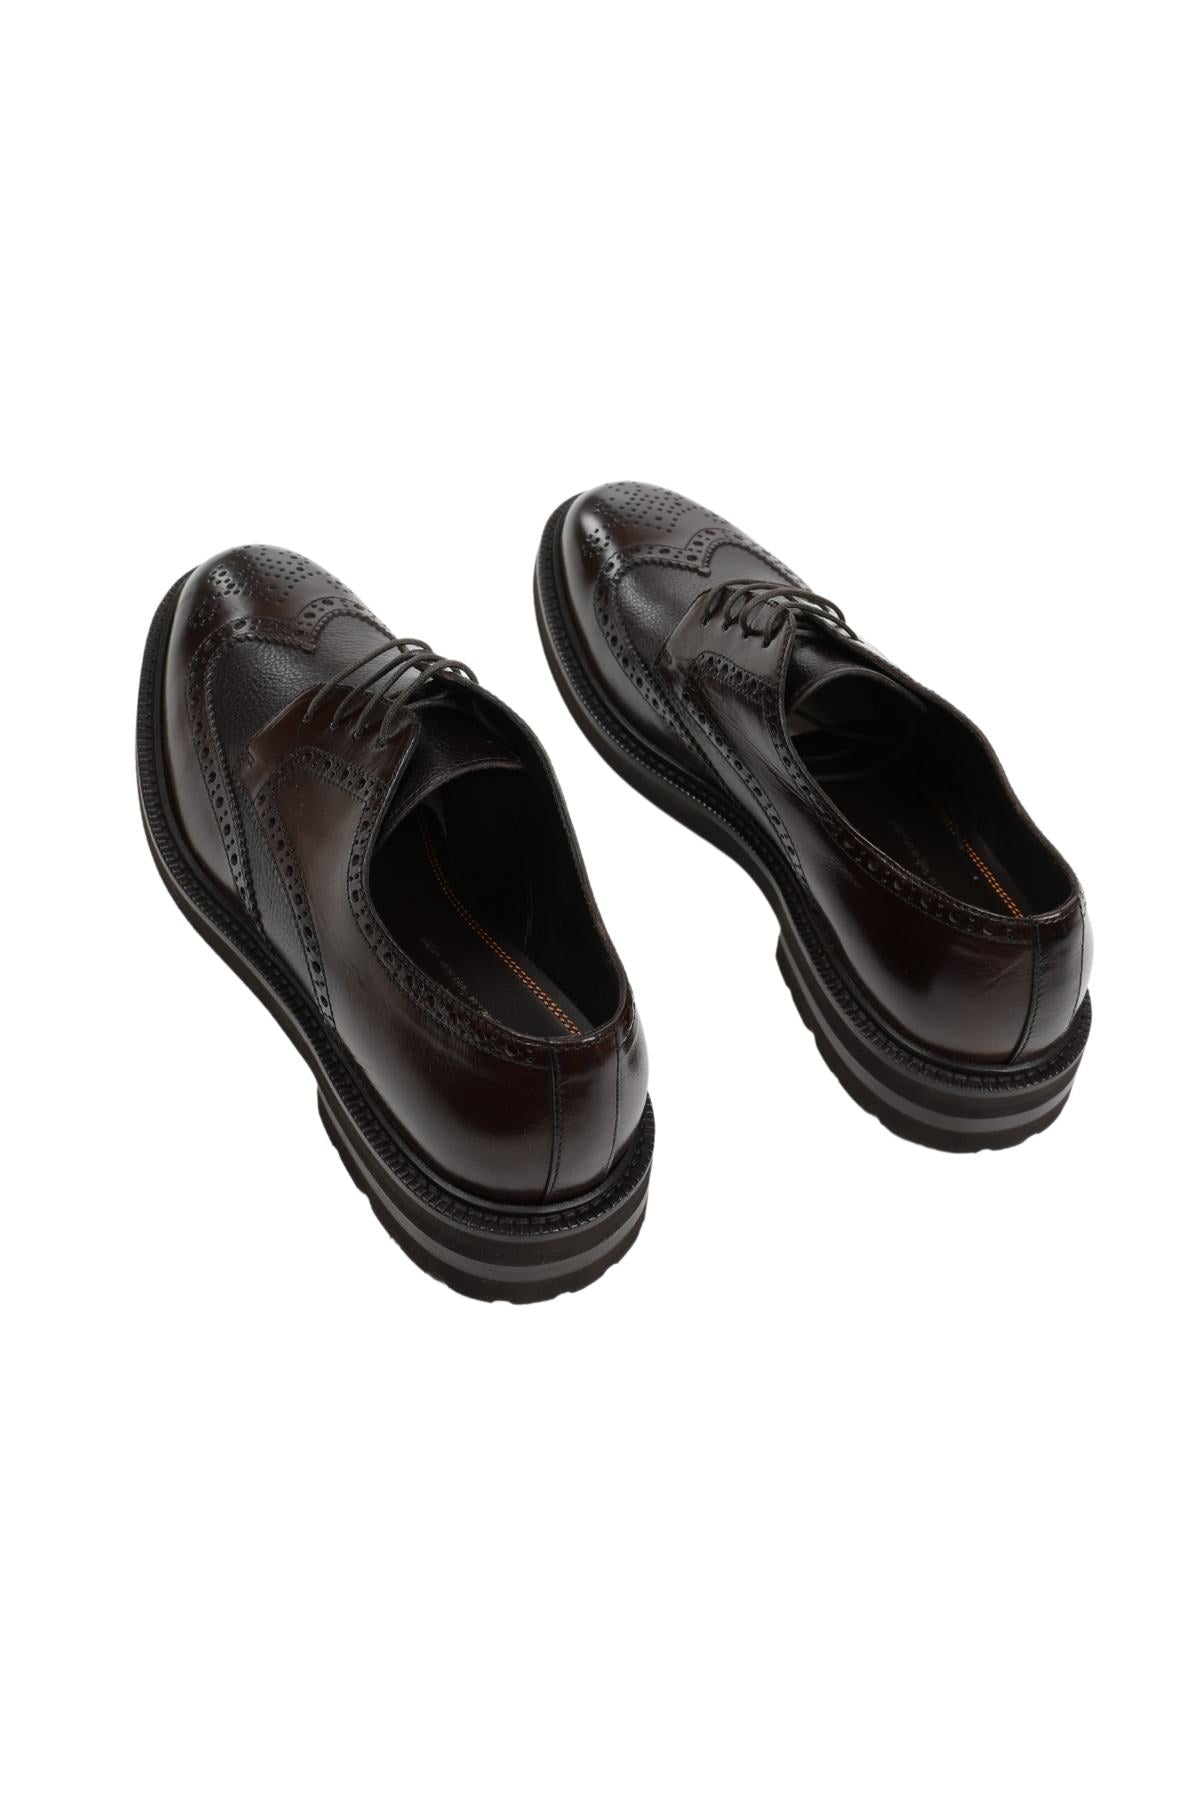 Henderson Vibram Taban Zımbalı Deri Casual Ayakkabı-Libas Trendy Fashion Store